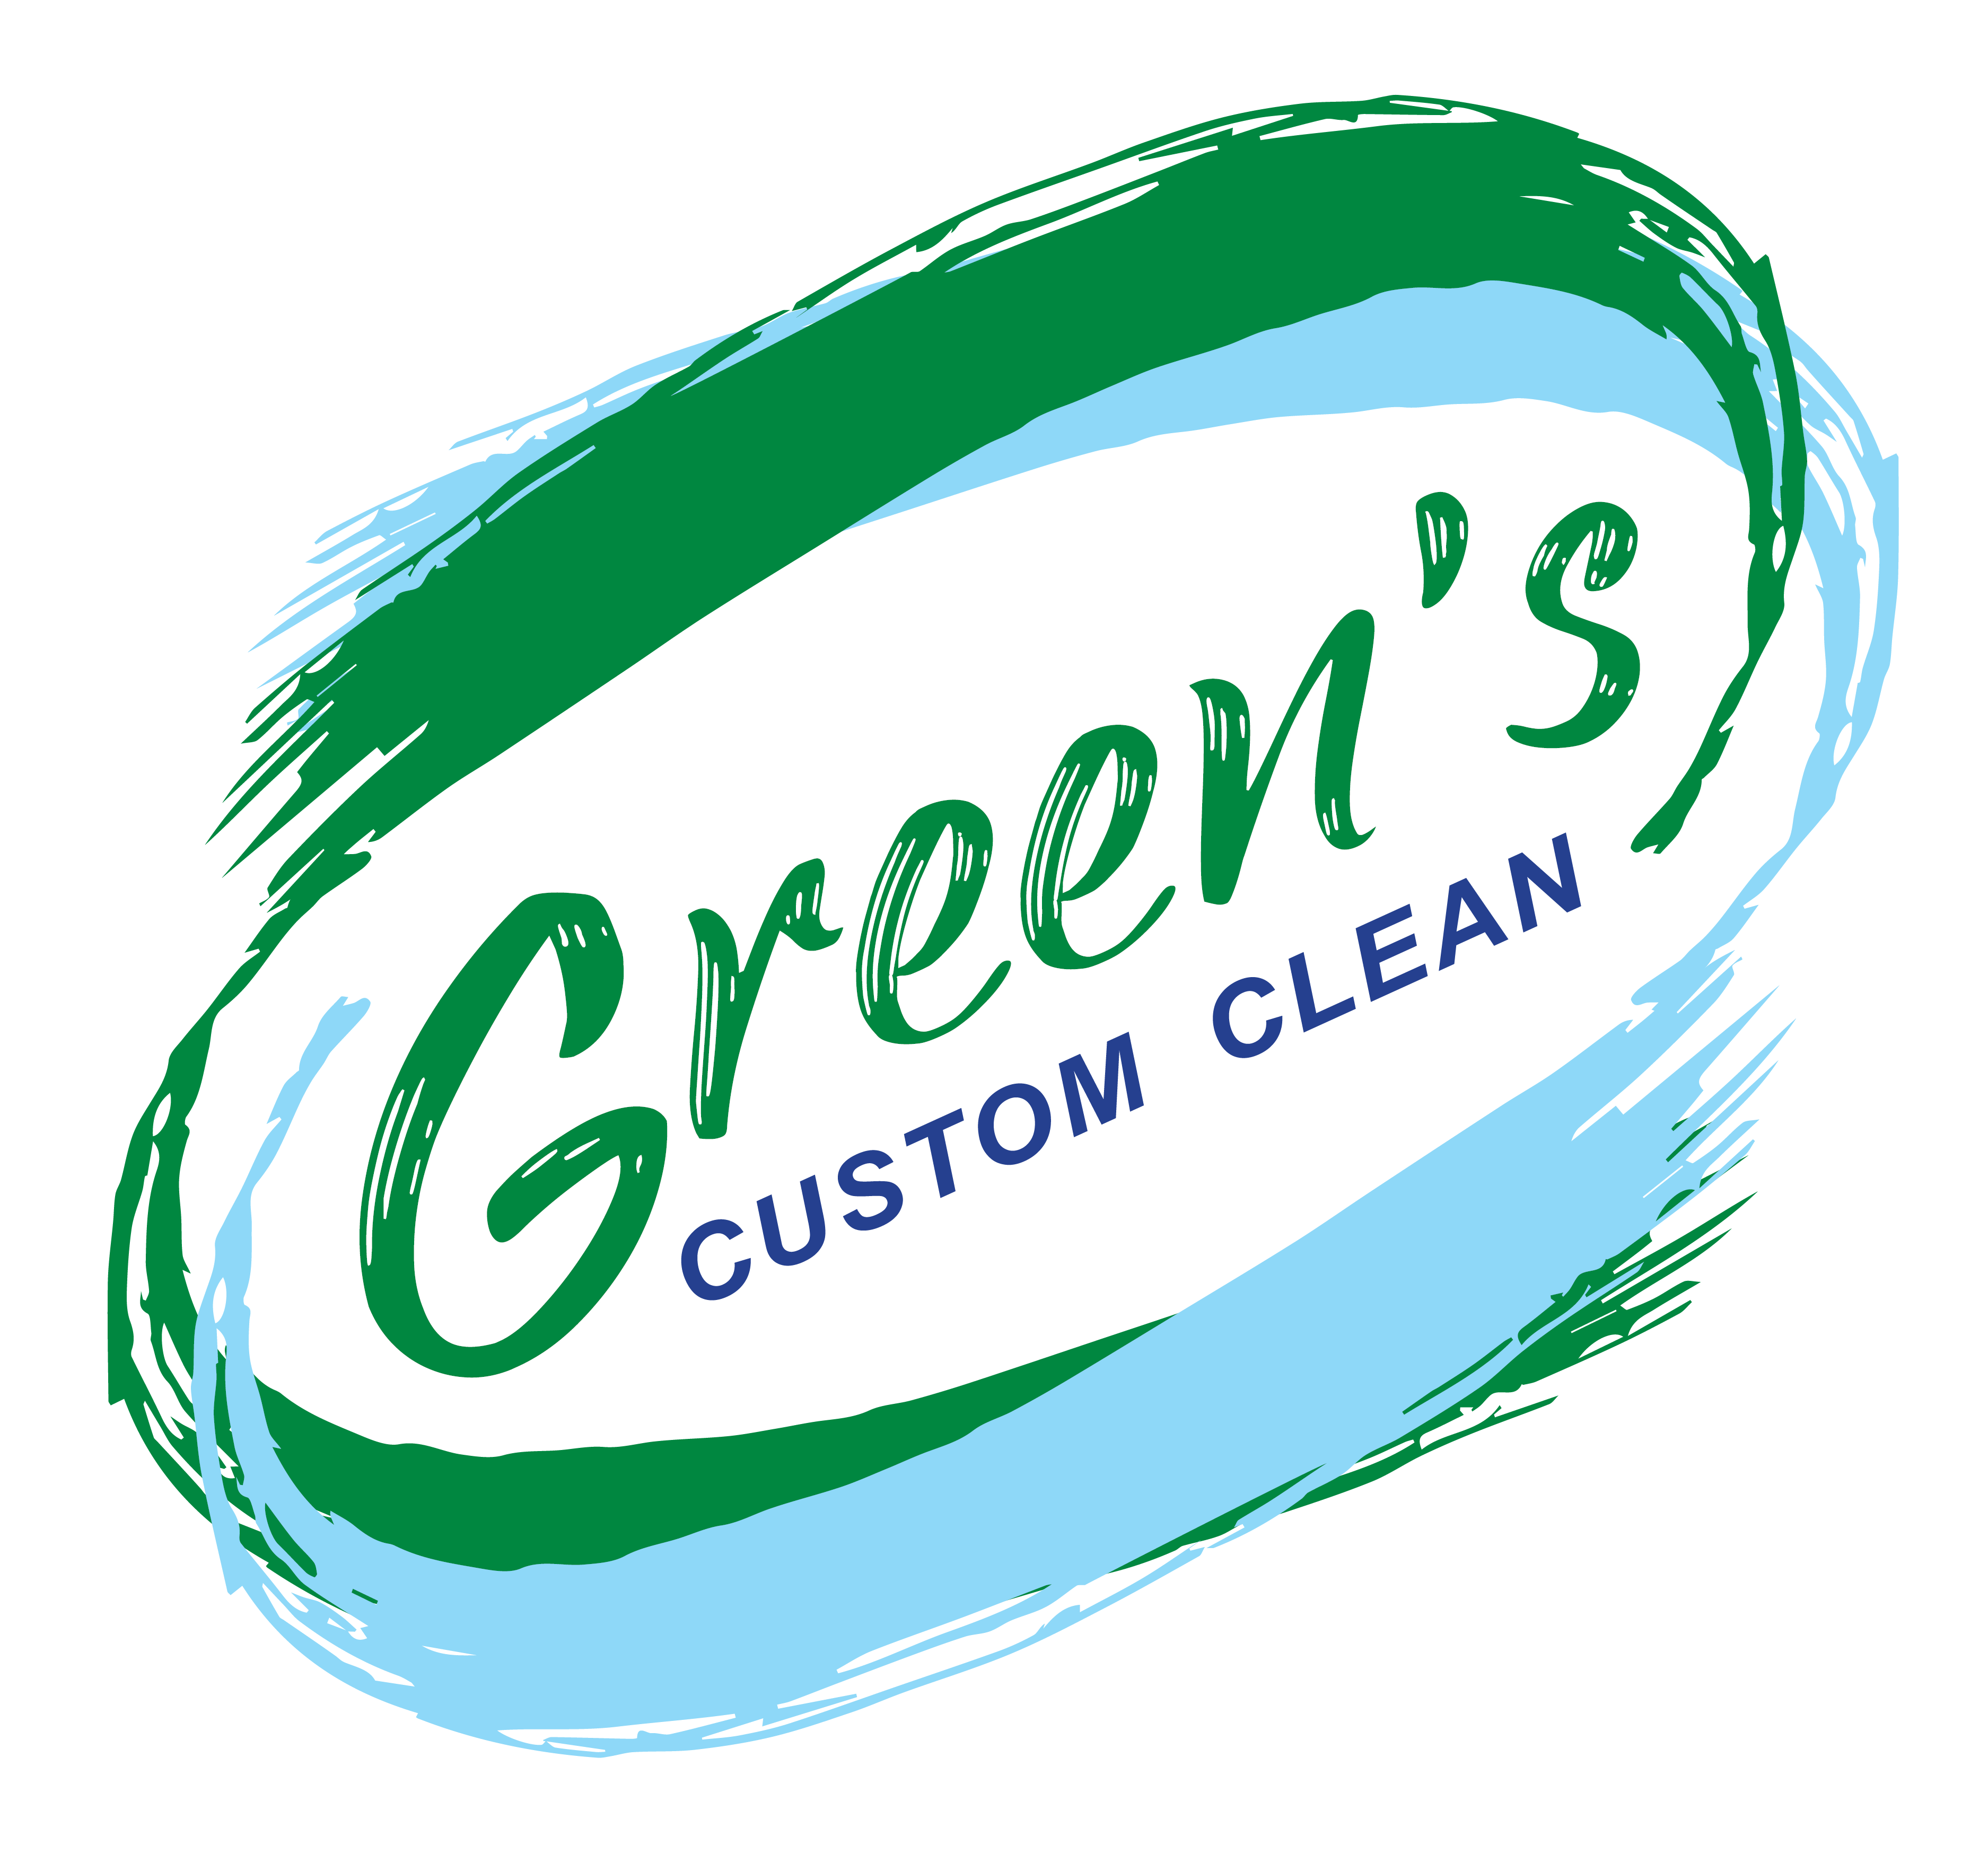 Green's Custom Clean